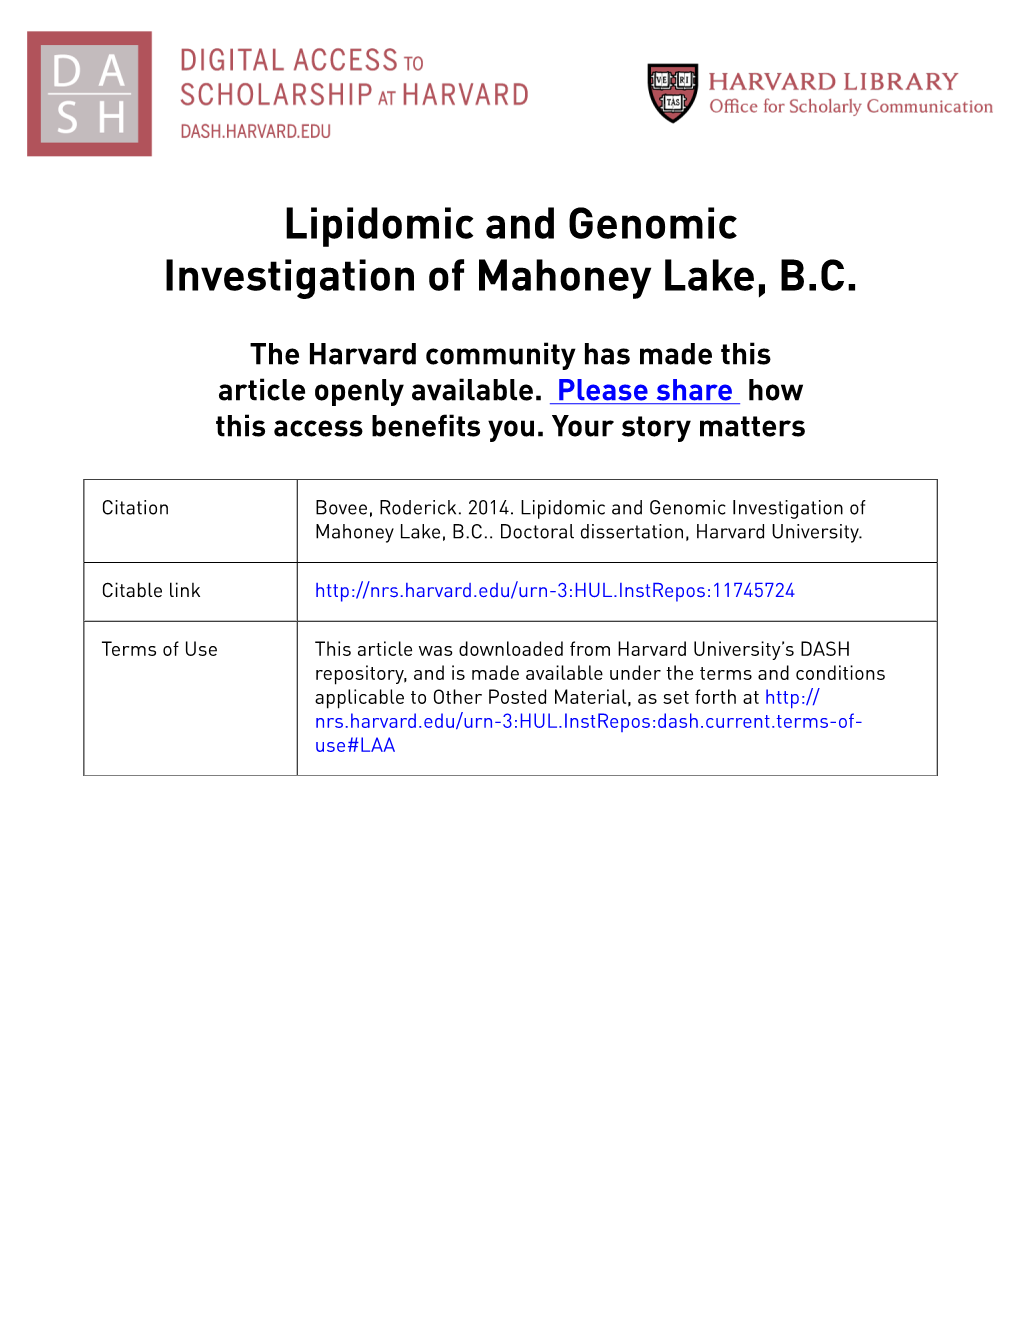 Lipidomic and Genomic Investigation of Mahoney Lake, B.C